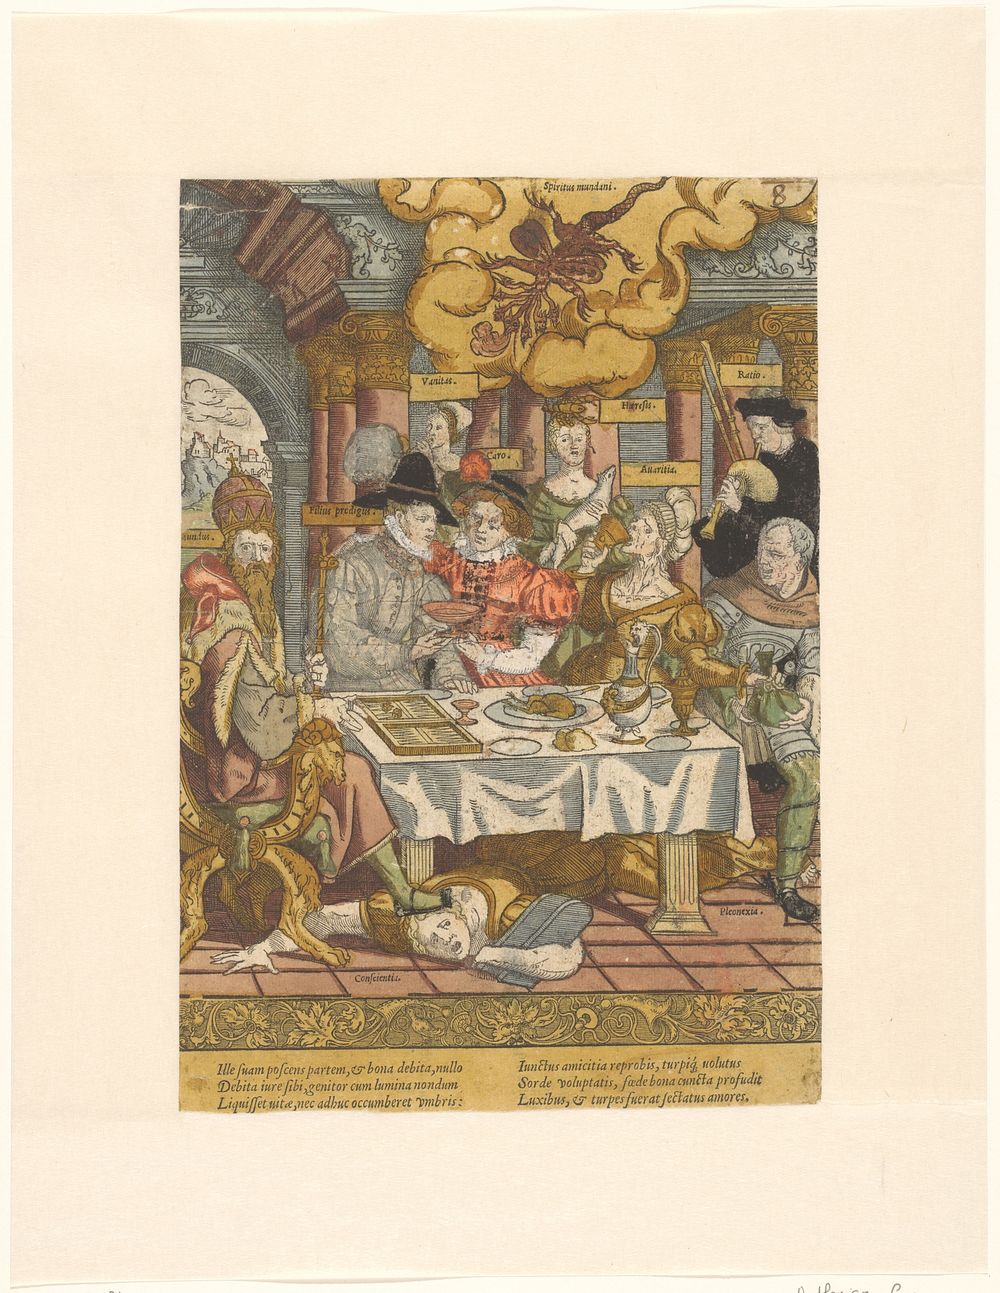 De verloren zoon verspilt zijn erfenis (c. 1540 - c. 1550) by Cornelis Anthonisz and Cornelis Anthonisz